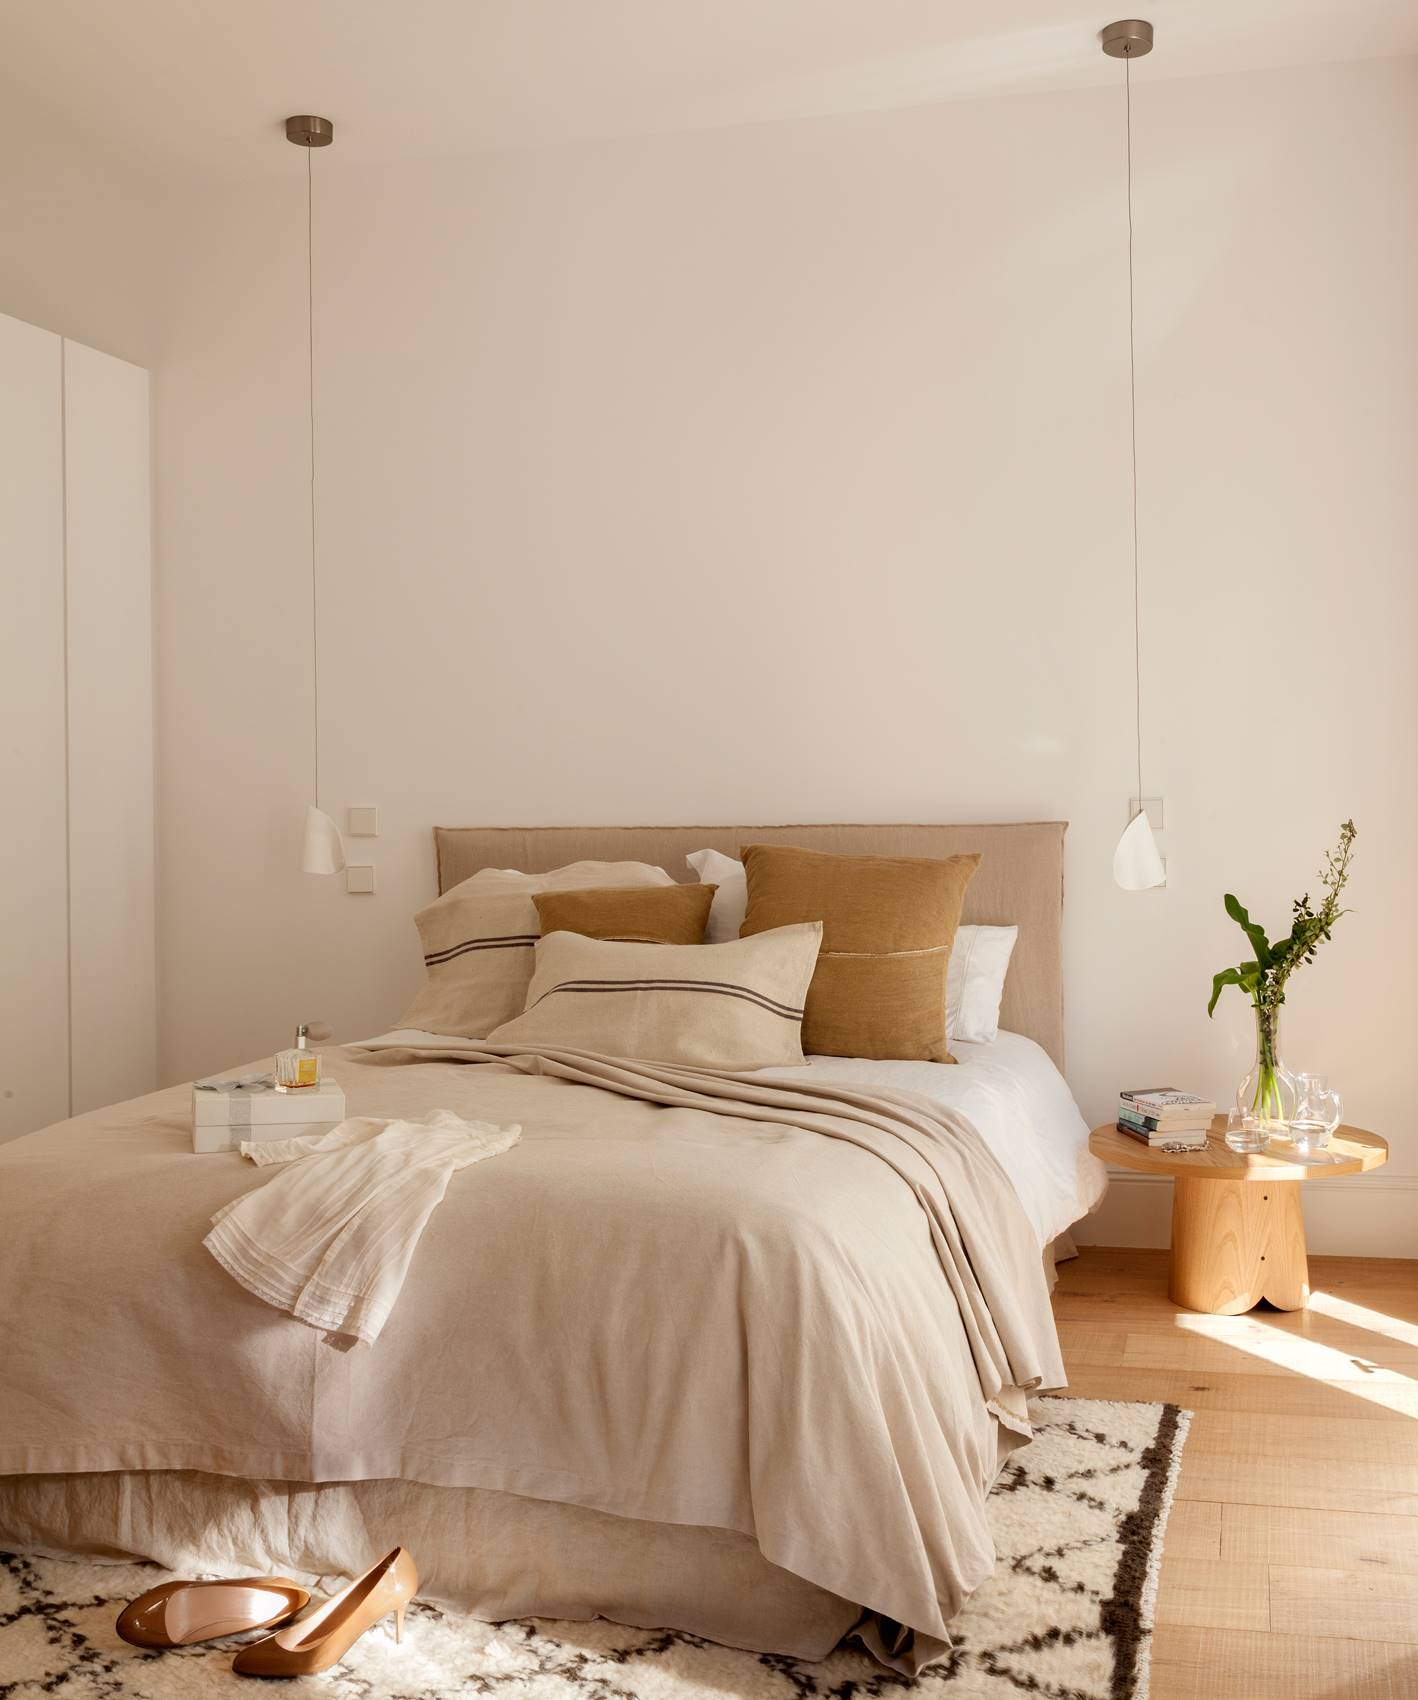 Dormitorio de diseño contemporáneo con lámparas colgantes a ambos lados de la cama